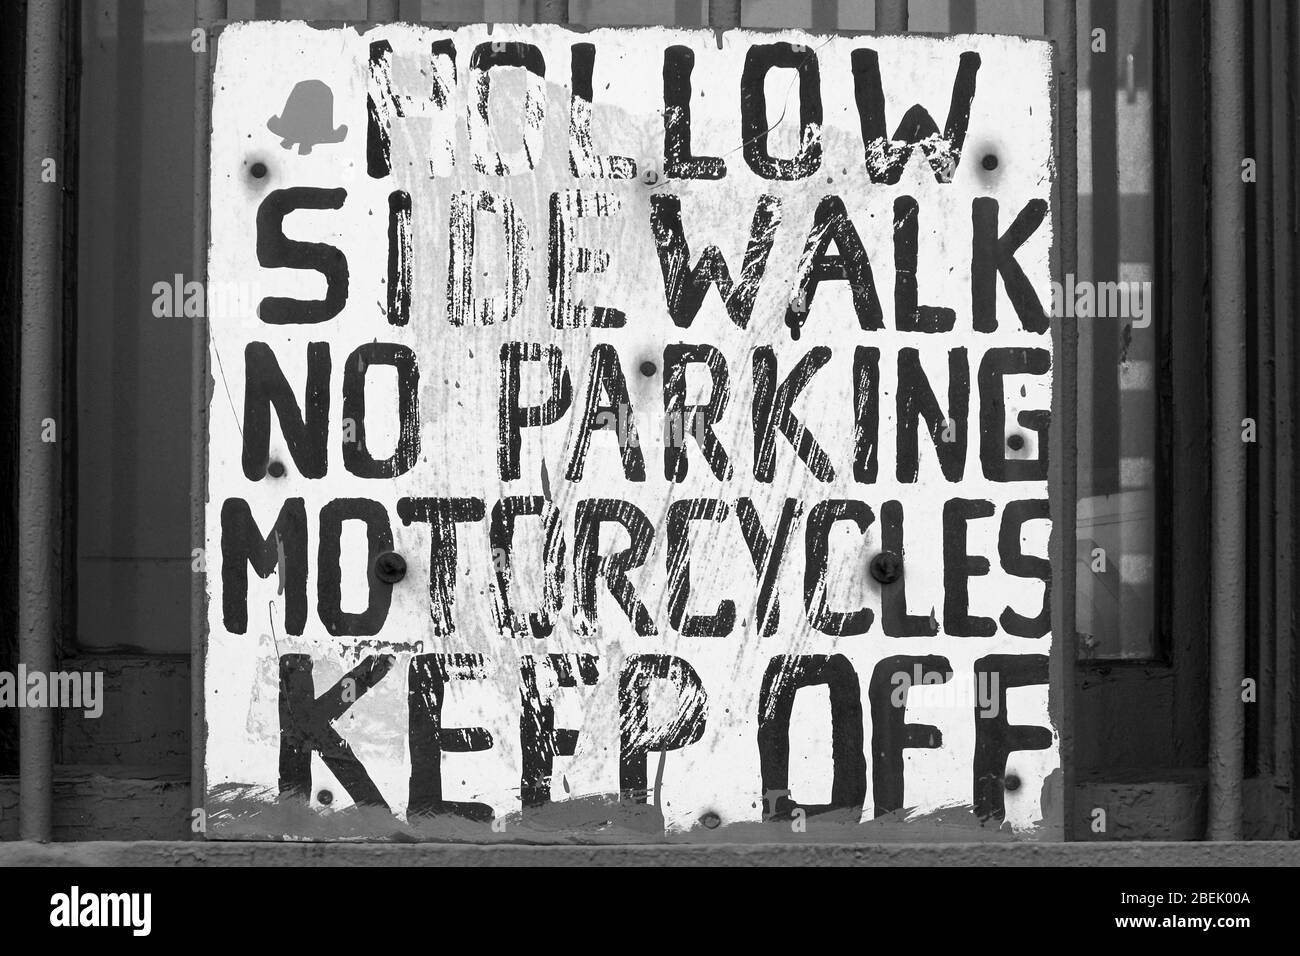 Trottoir creux.Pas de parking.Les motos se départir.Panneau peint à la main sur une fenêtre à Manhattan, New York City, États-Unis d'Amérique. Banque D'Images